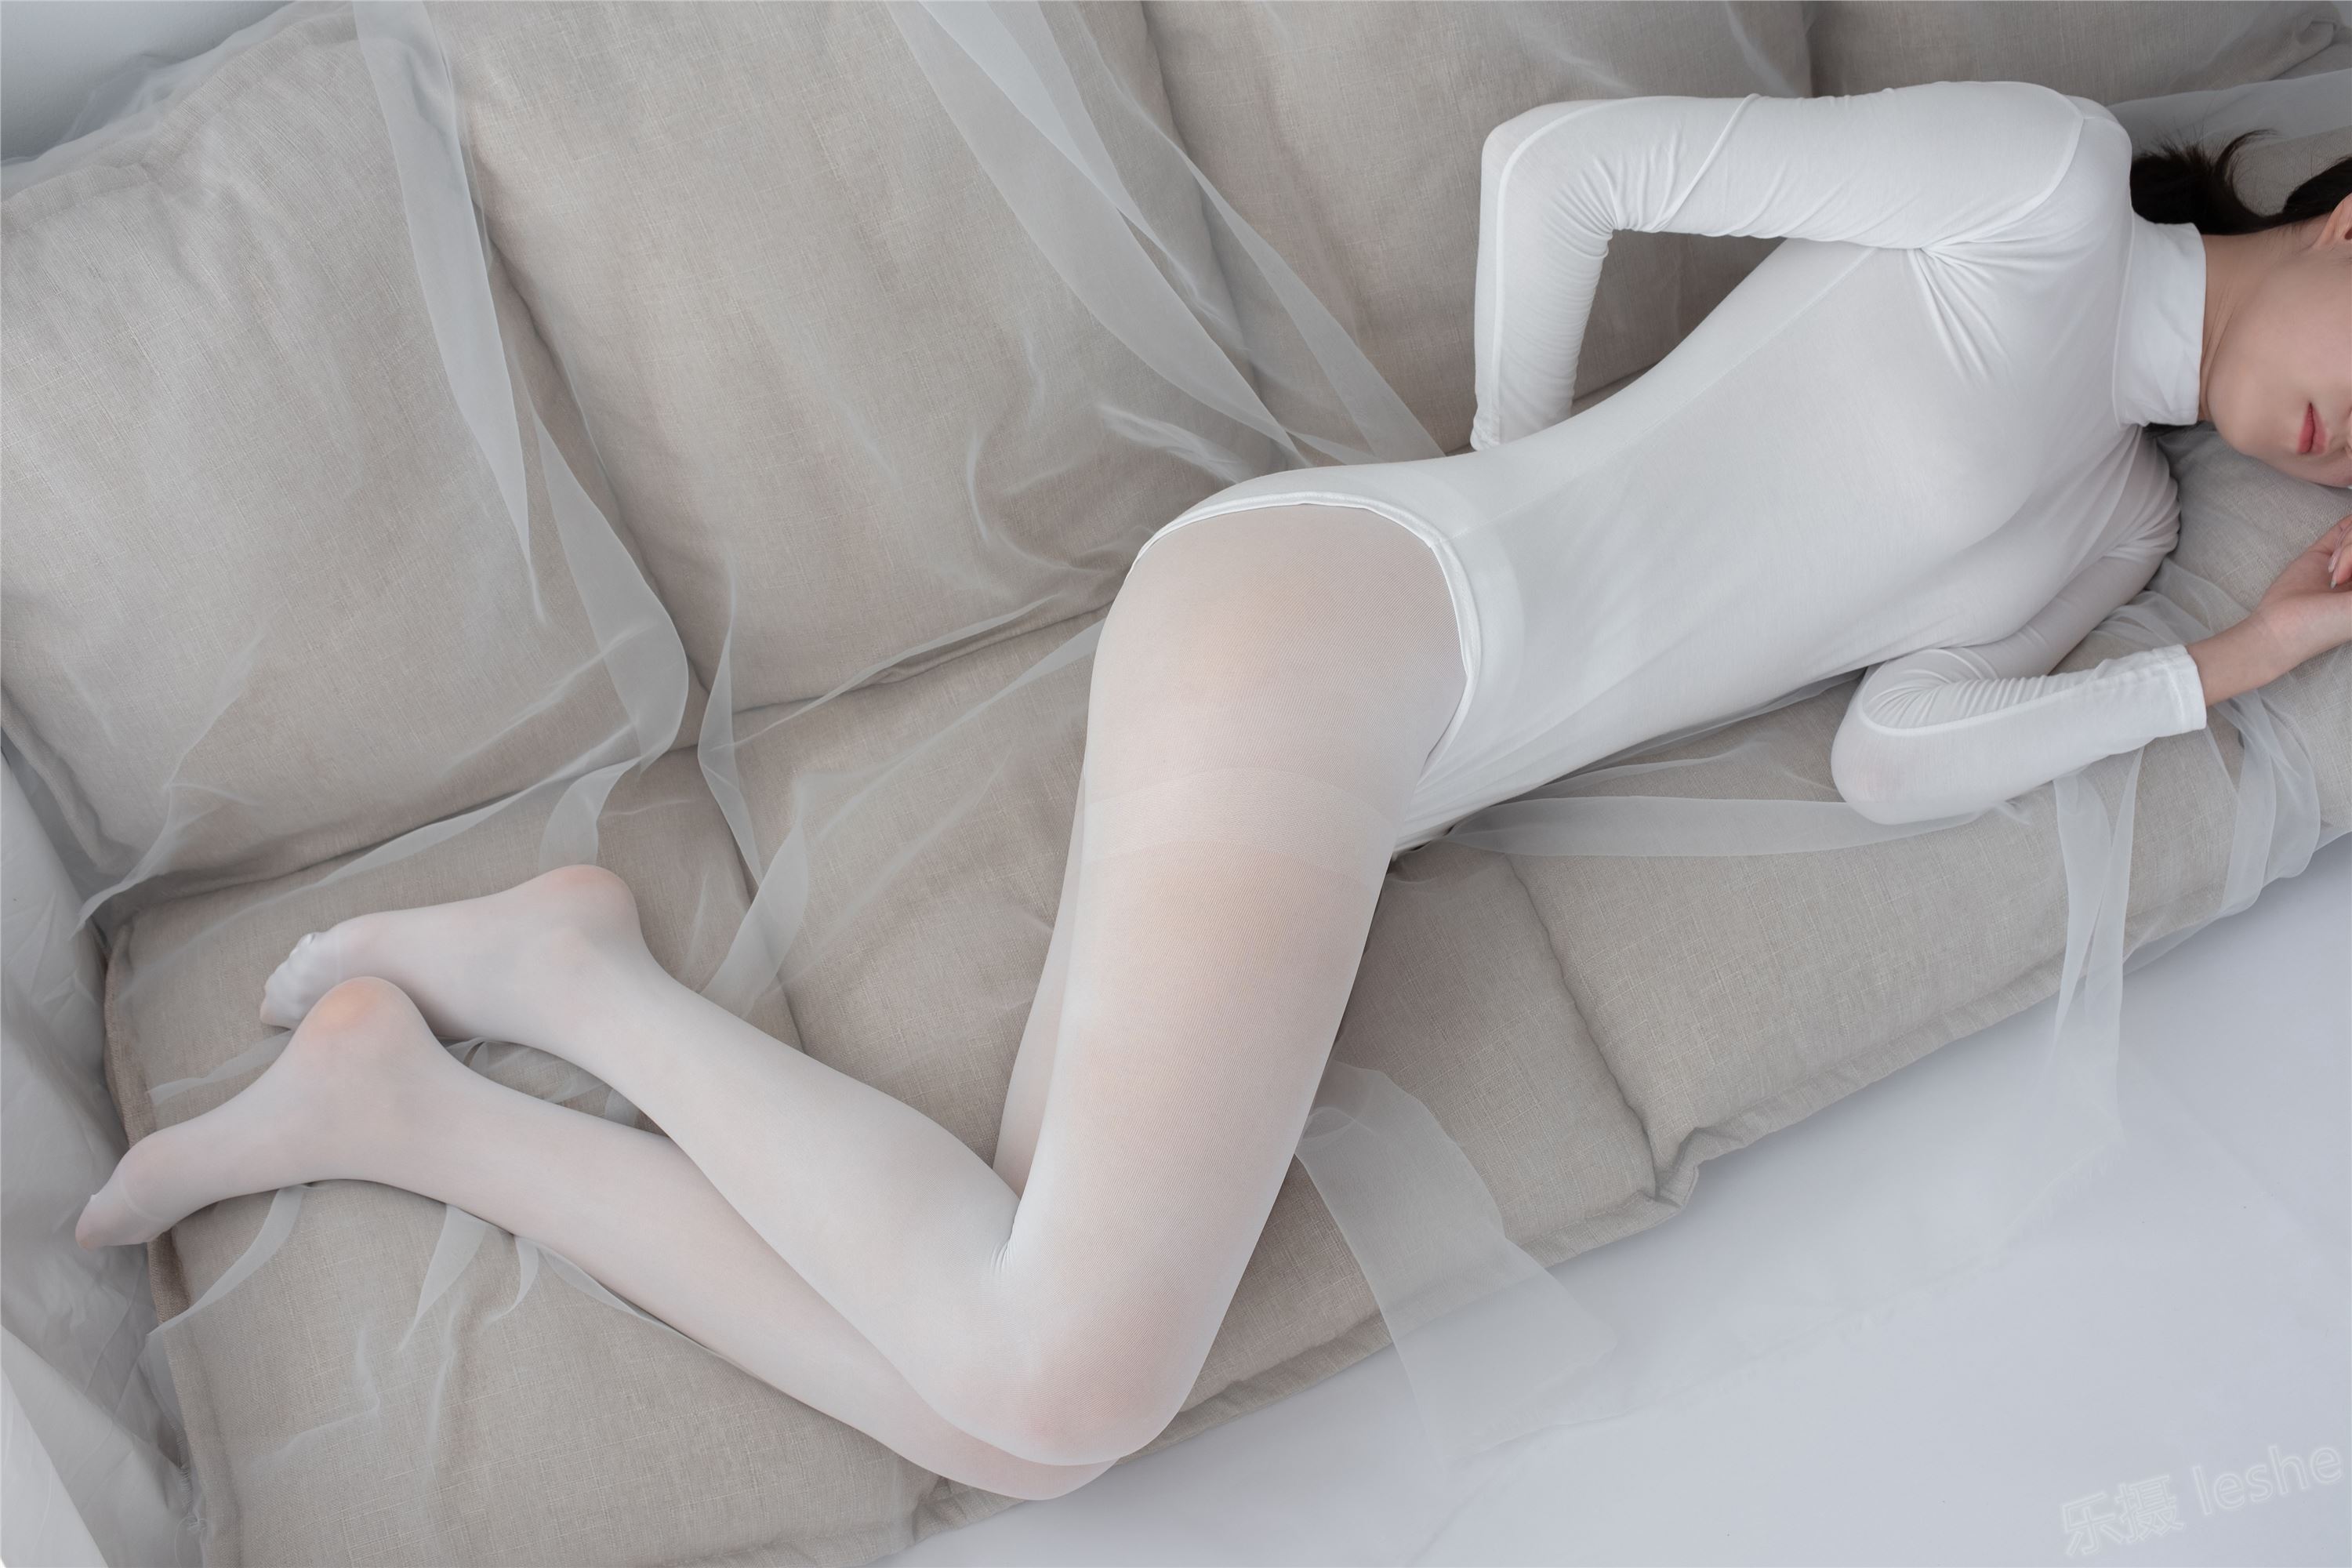 [森萝财团]萝莉丝足写真 ALPHA-007 纯白的诱惑白丝裸足